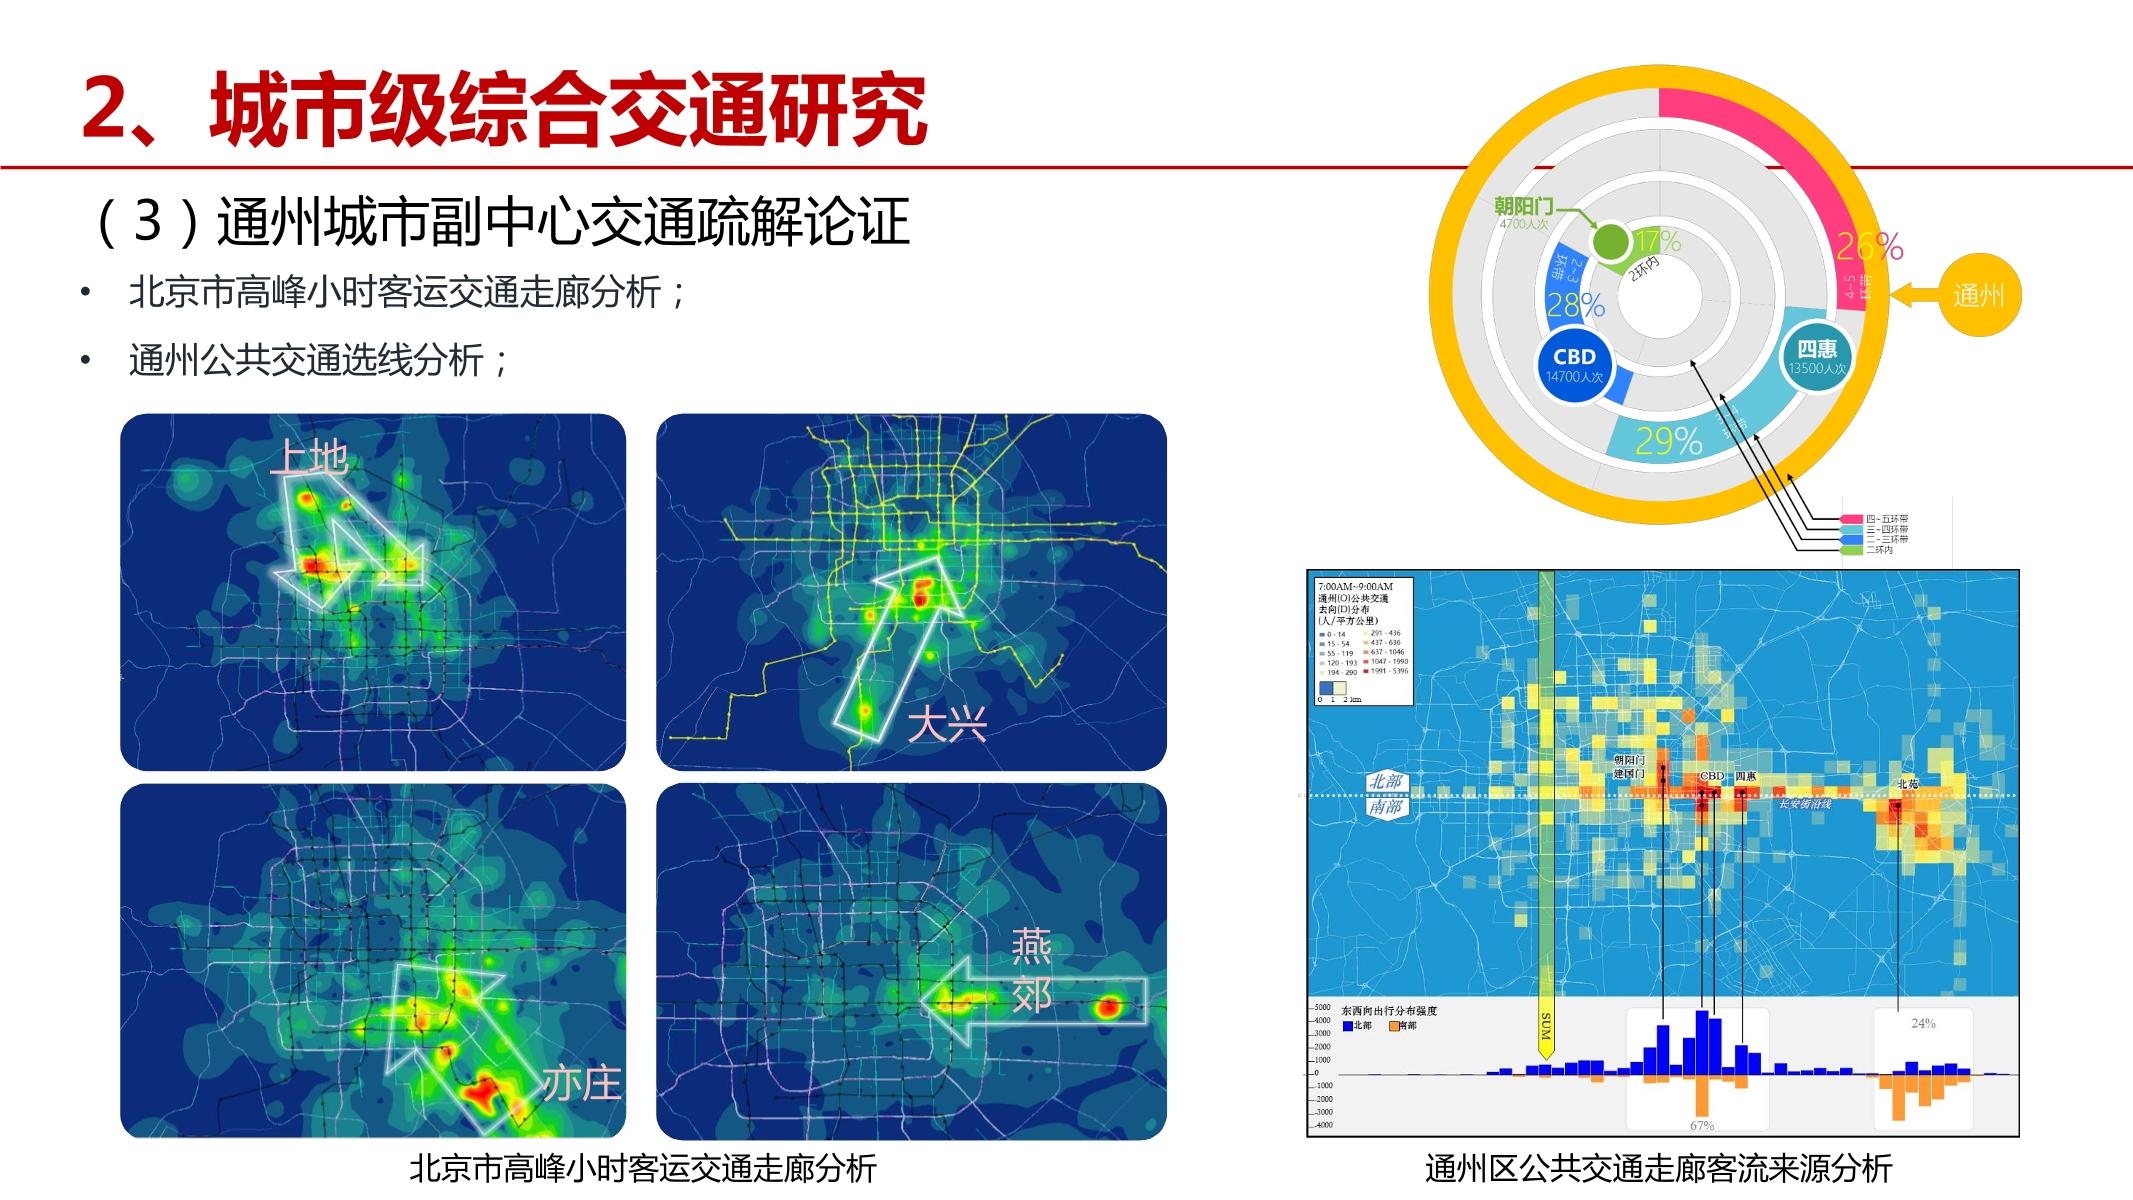 运营商大数据在交通规划中的应用探讨—文武-45.jpg